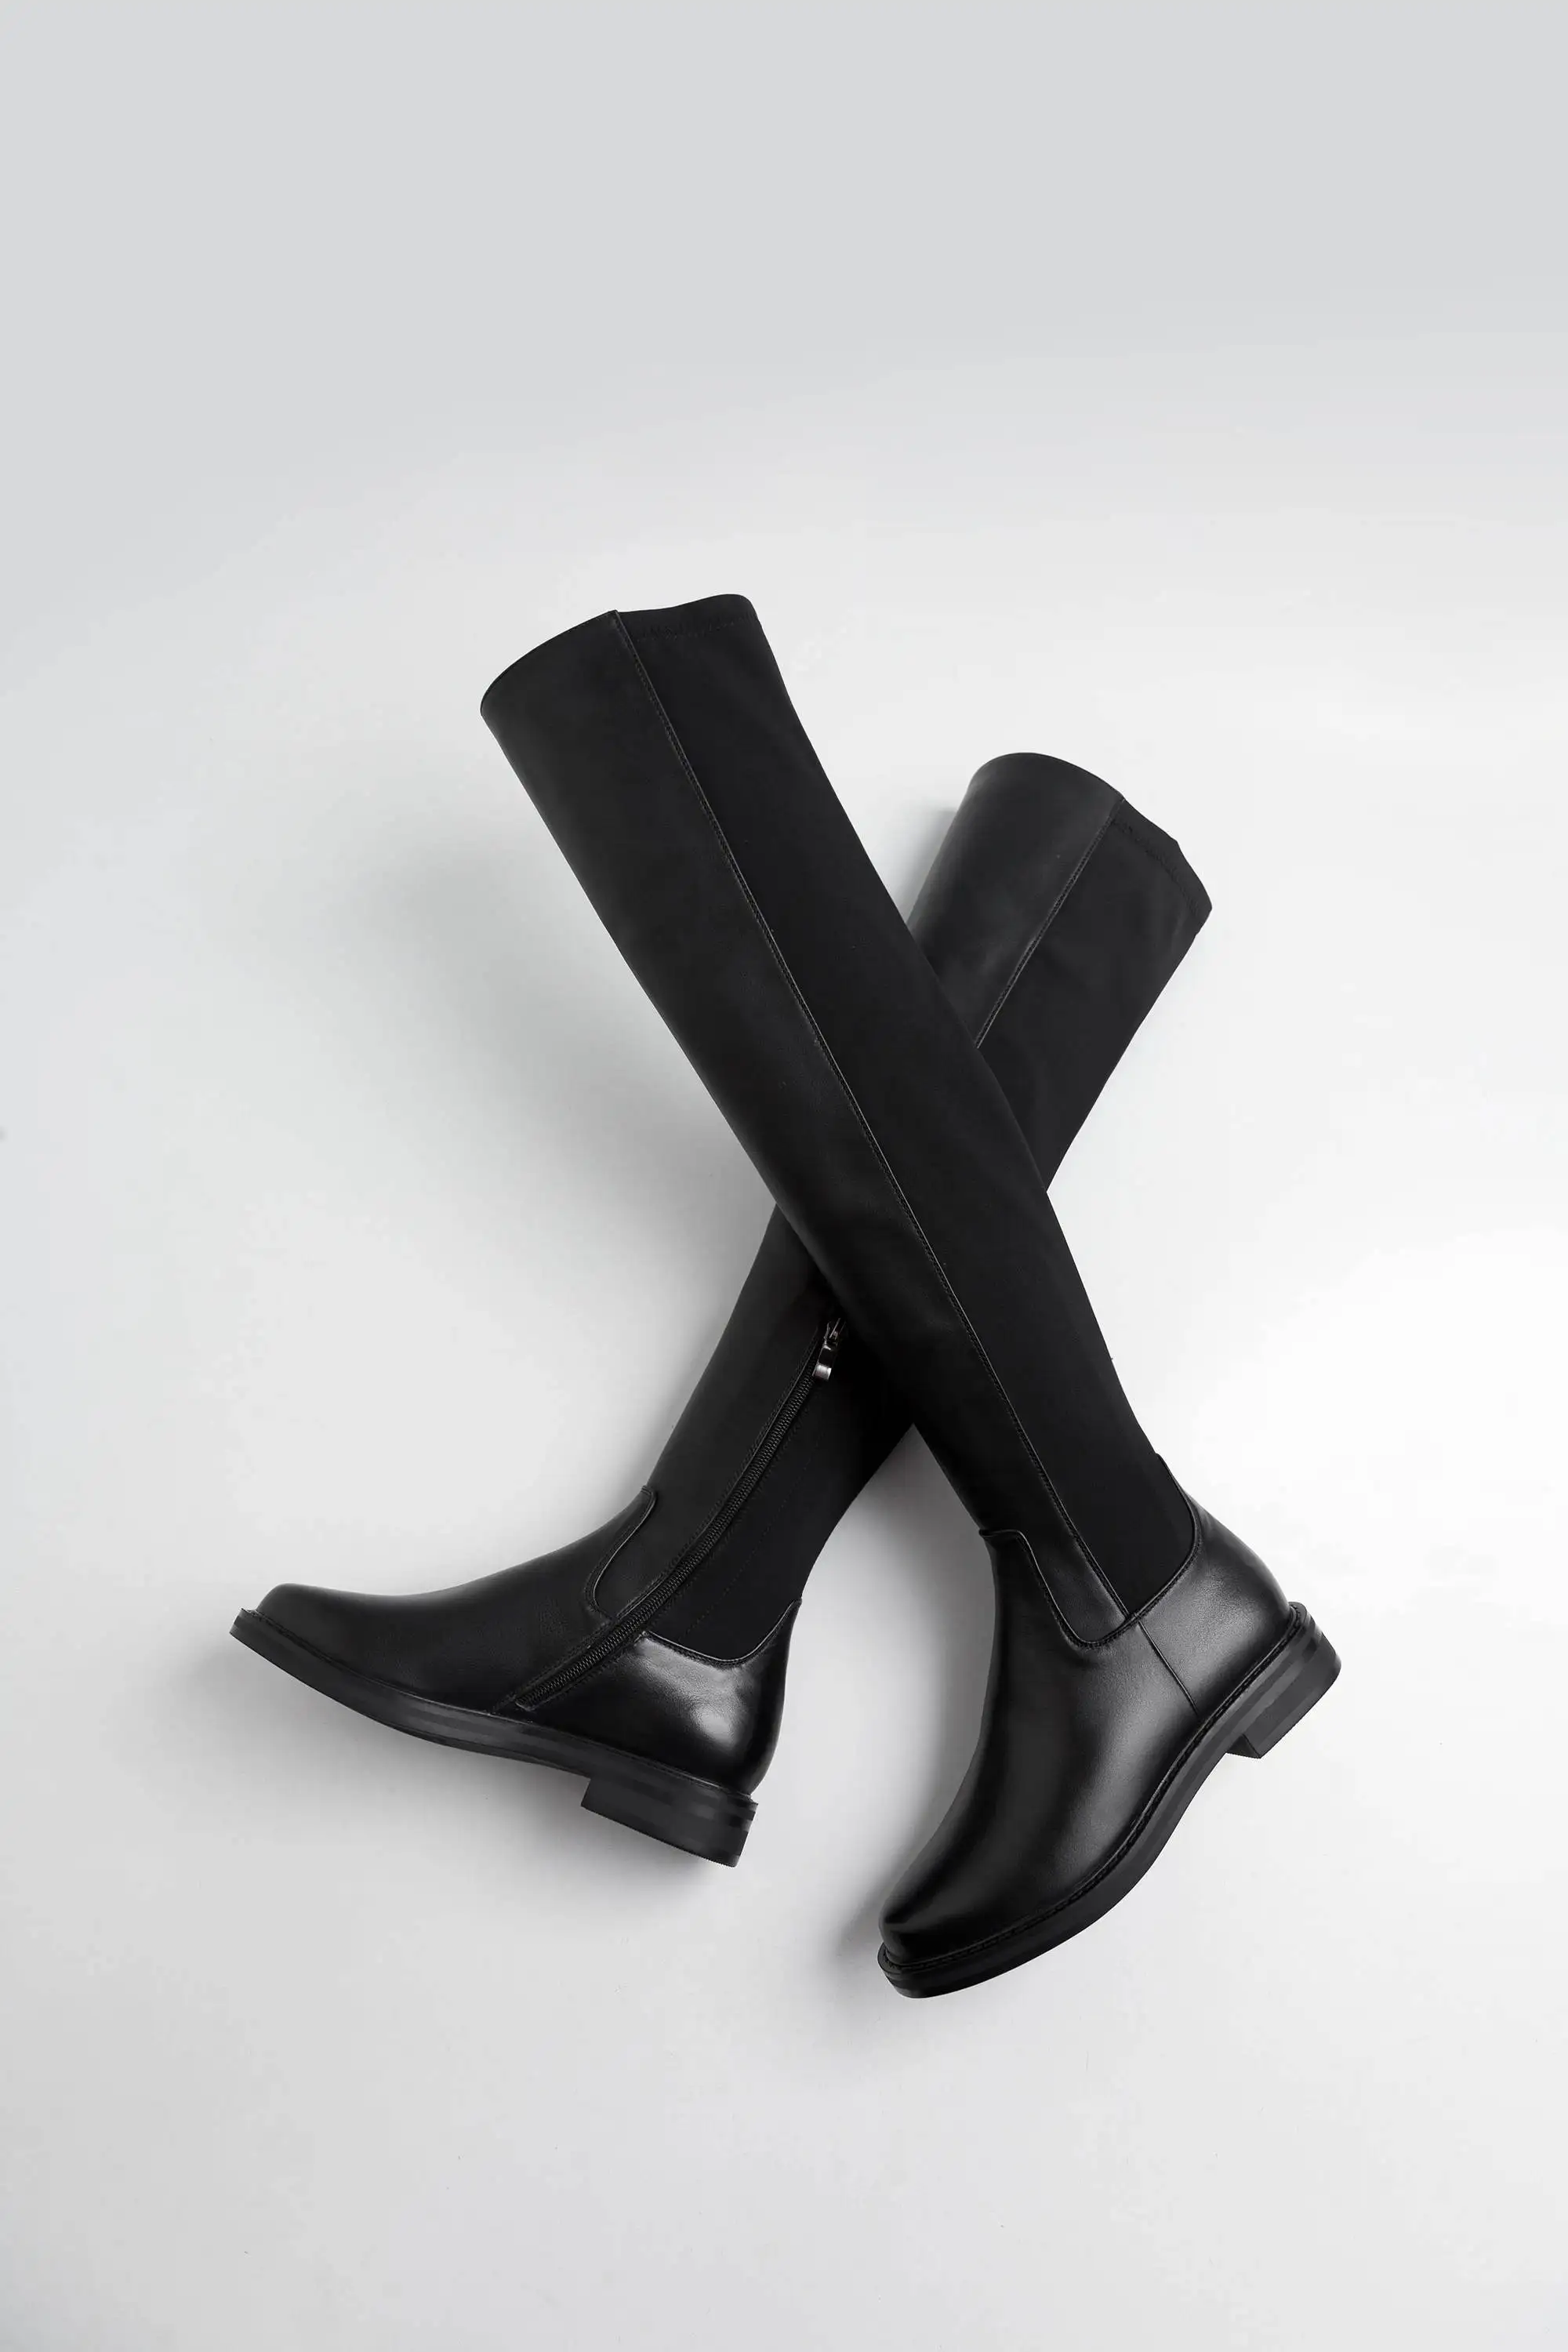 Krazing pot/ г. Сапоги из натуральной кожи на низком каблуке в сдержанном стиле, сохраняющие тепло, онлайн-звезда, сохраняющие тонкие эластичные ботфорты L21